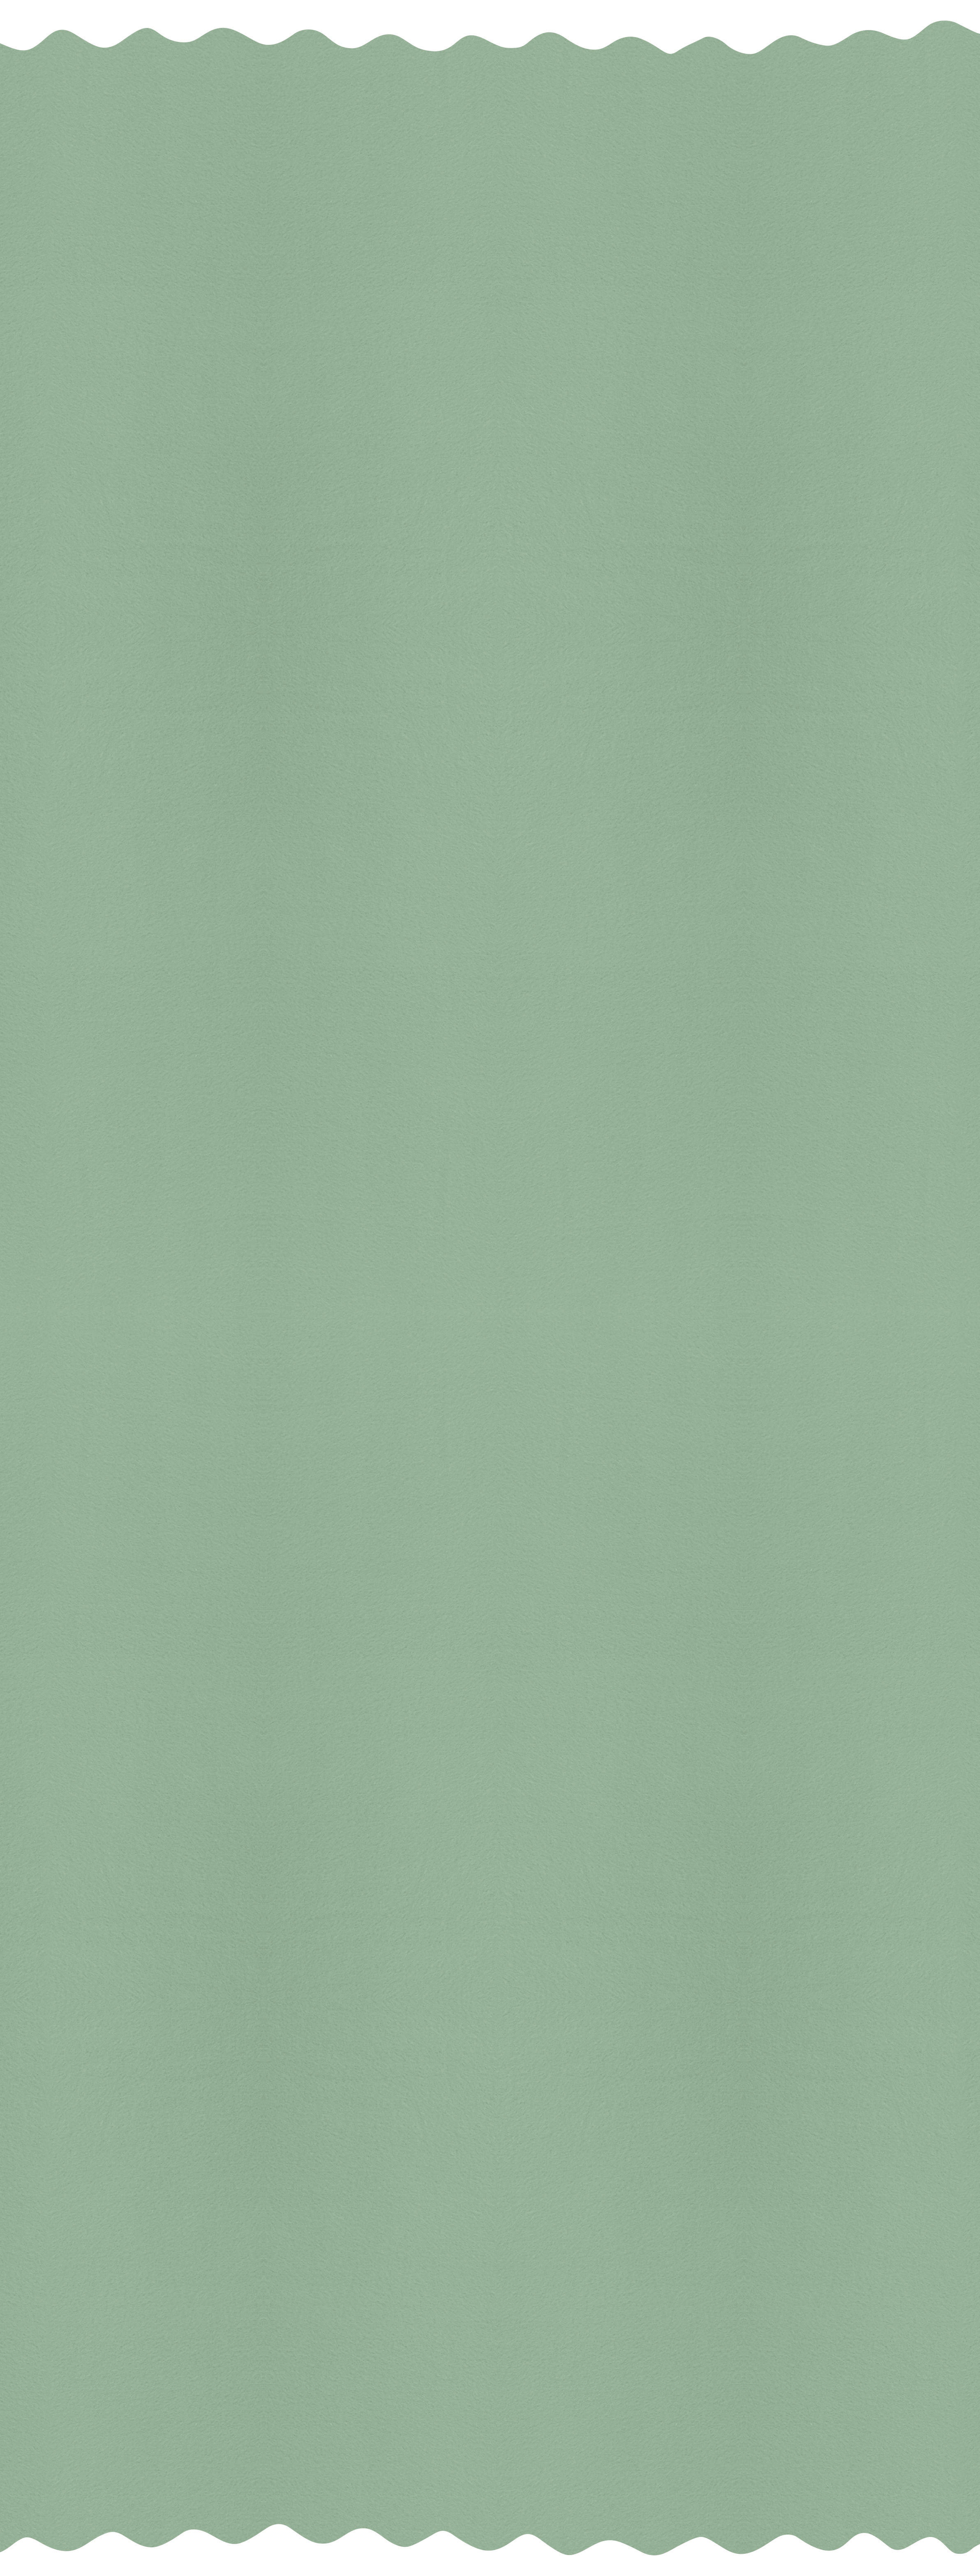 POKRIVAČ OD FLISA 75/100 cm  - zelena, Osnovno, tekstil (75/100cm) - My Baby Lou